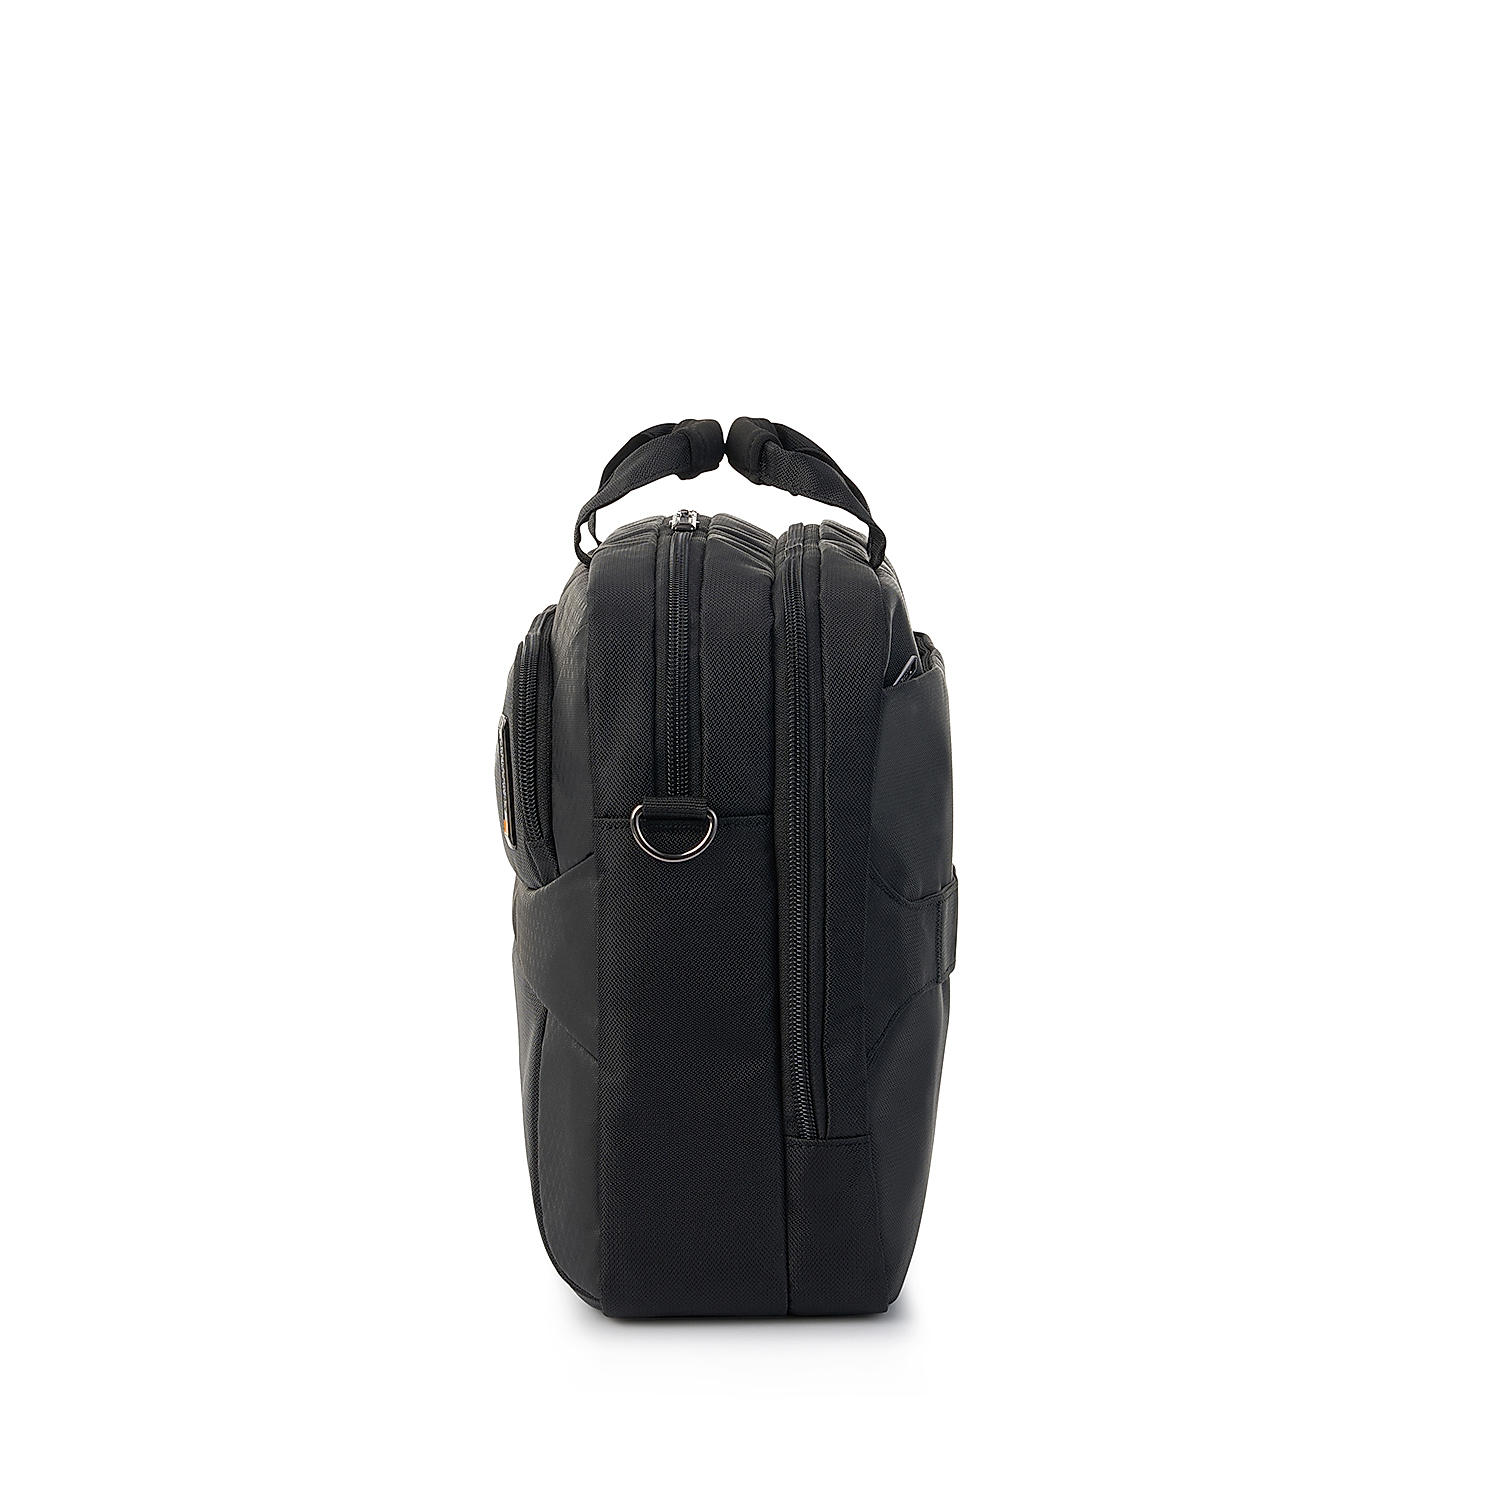 Buy Black Segno Briefcase (38 cm) Briefcase Online at American ...